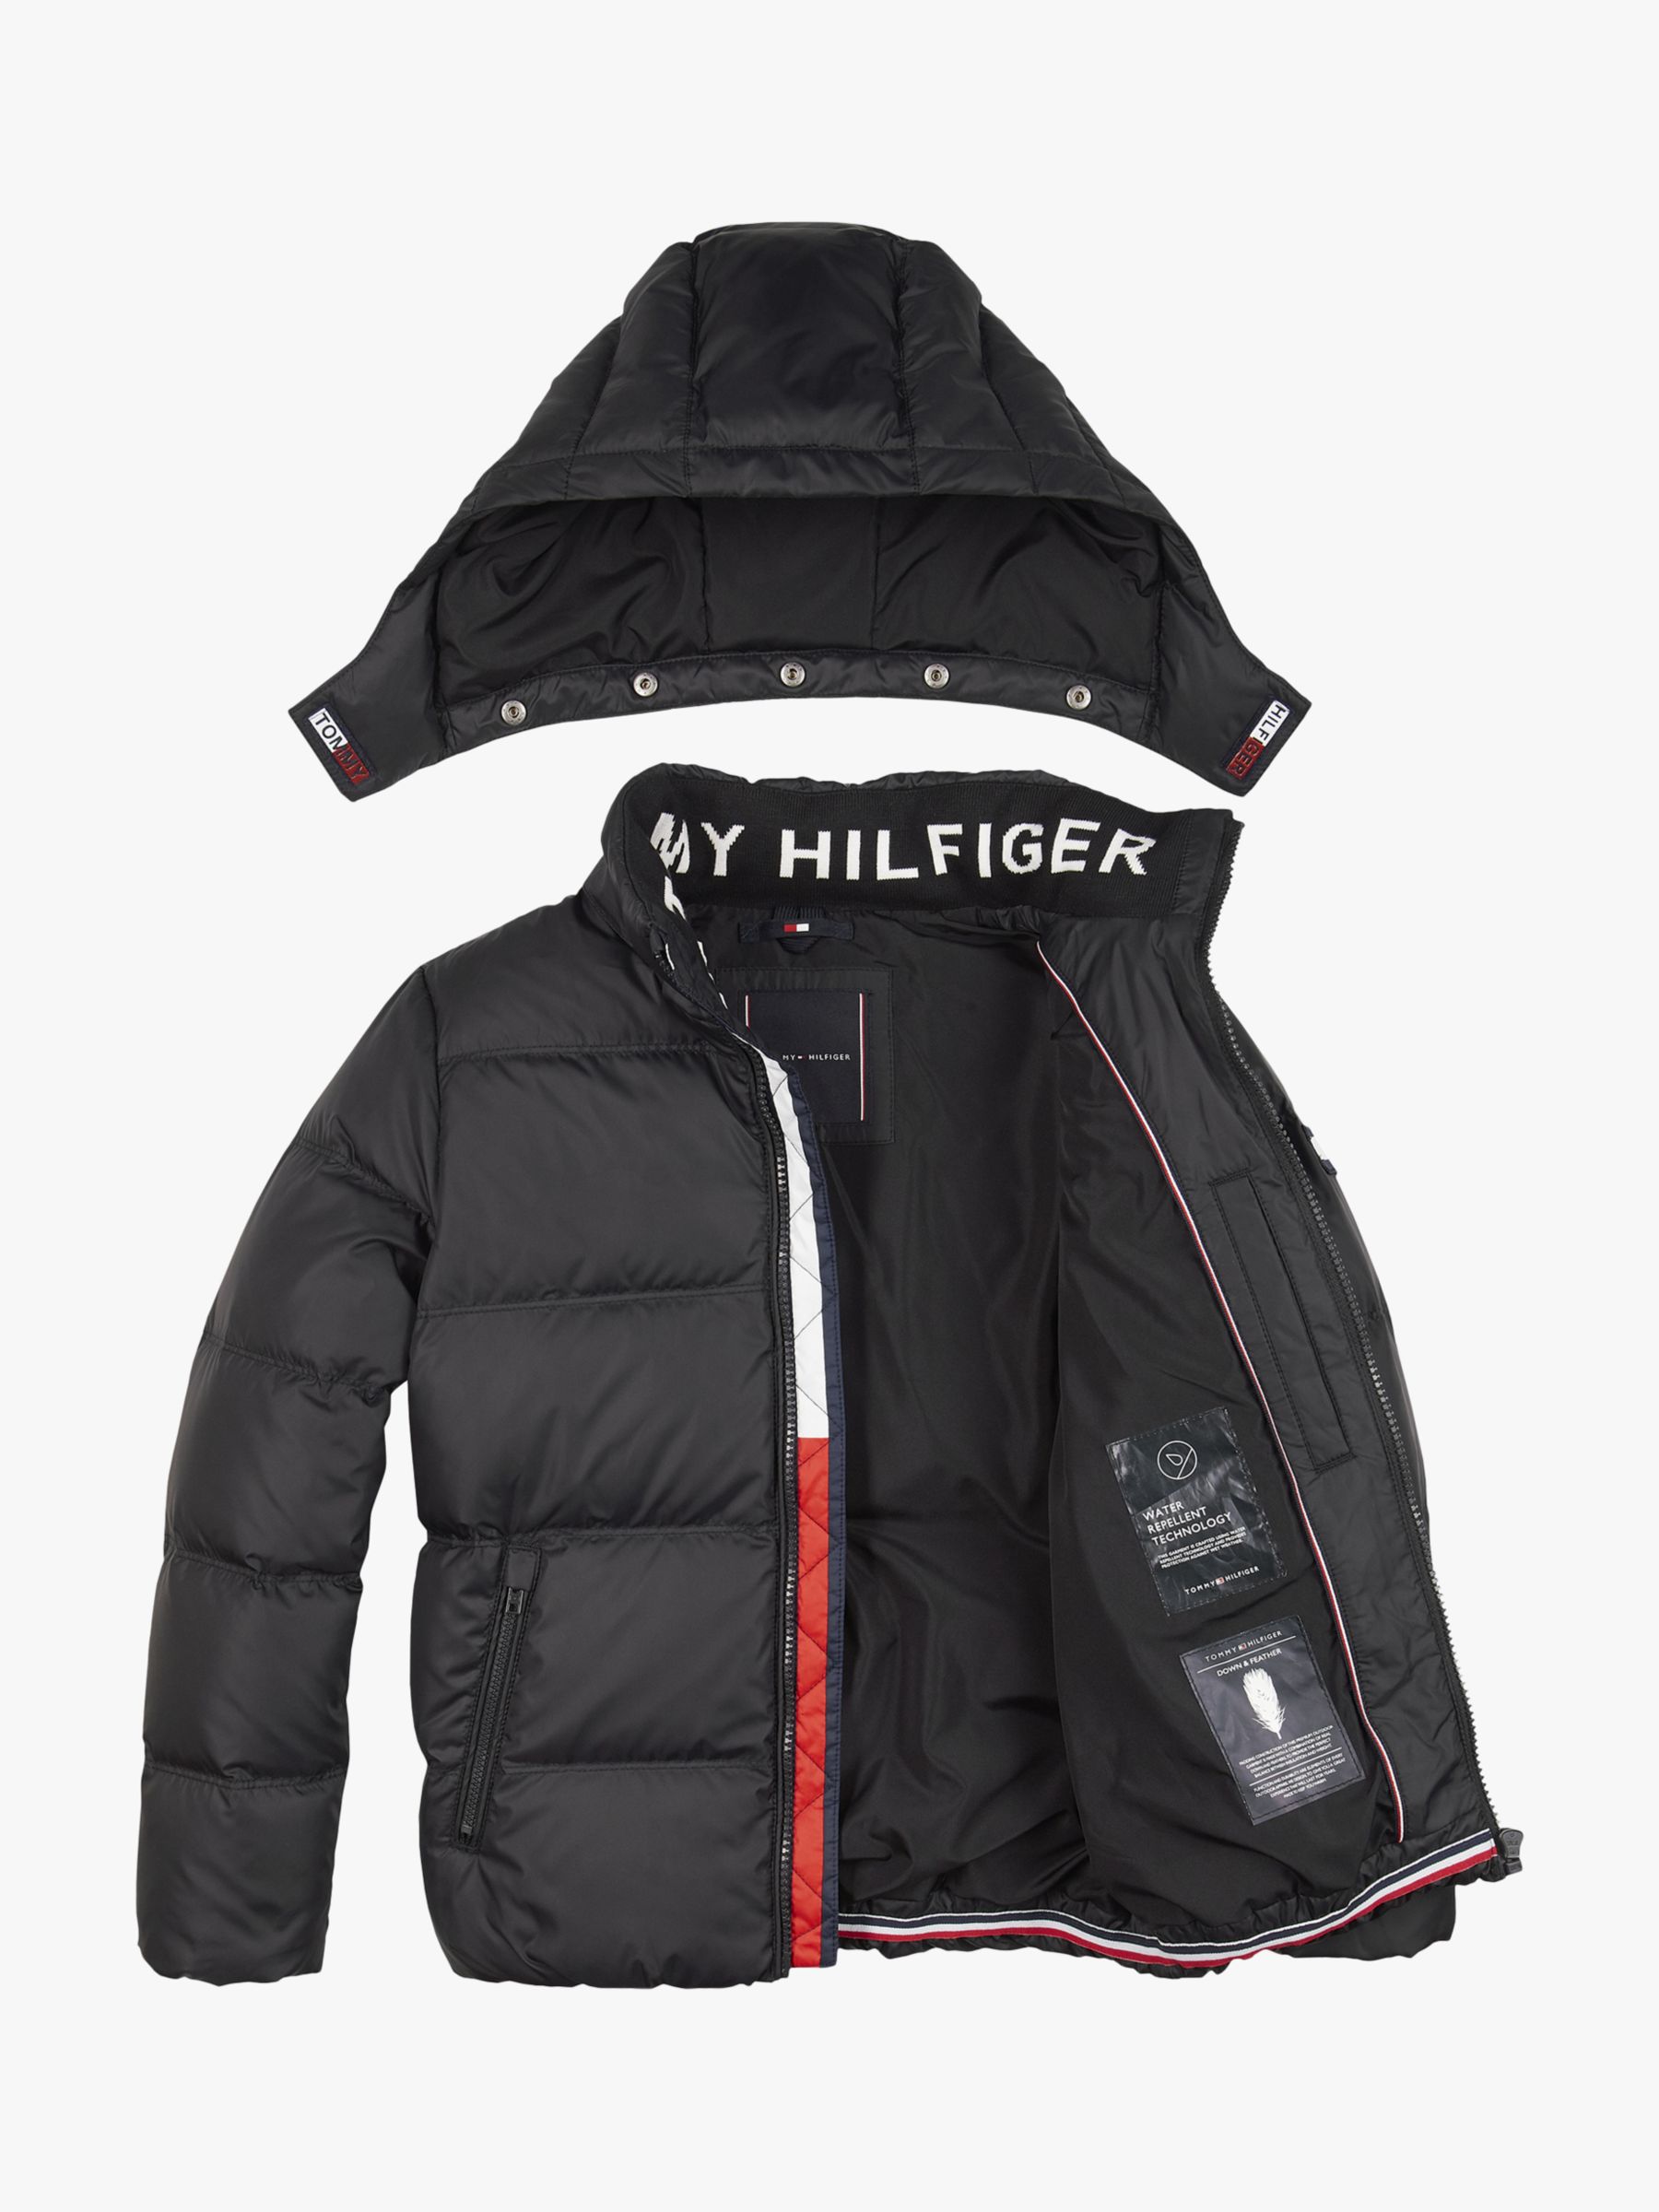 hilfiger black jacket